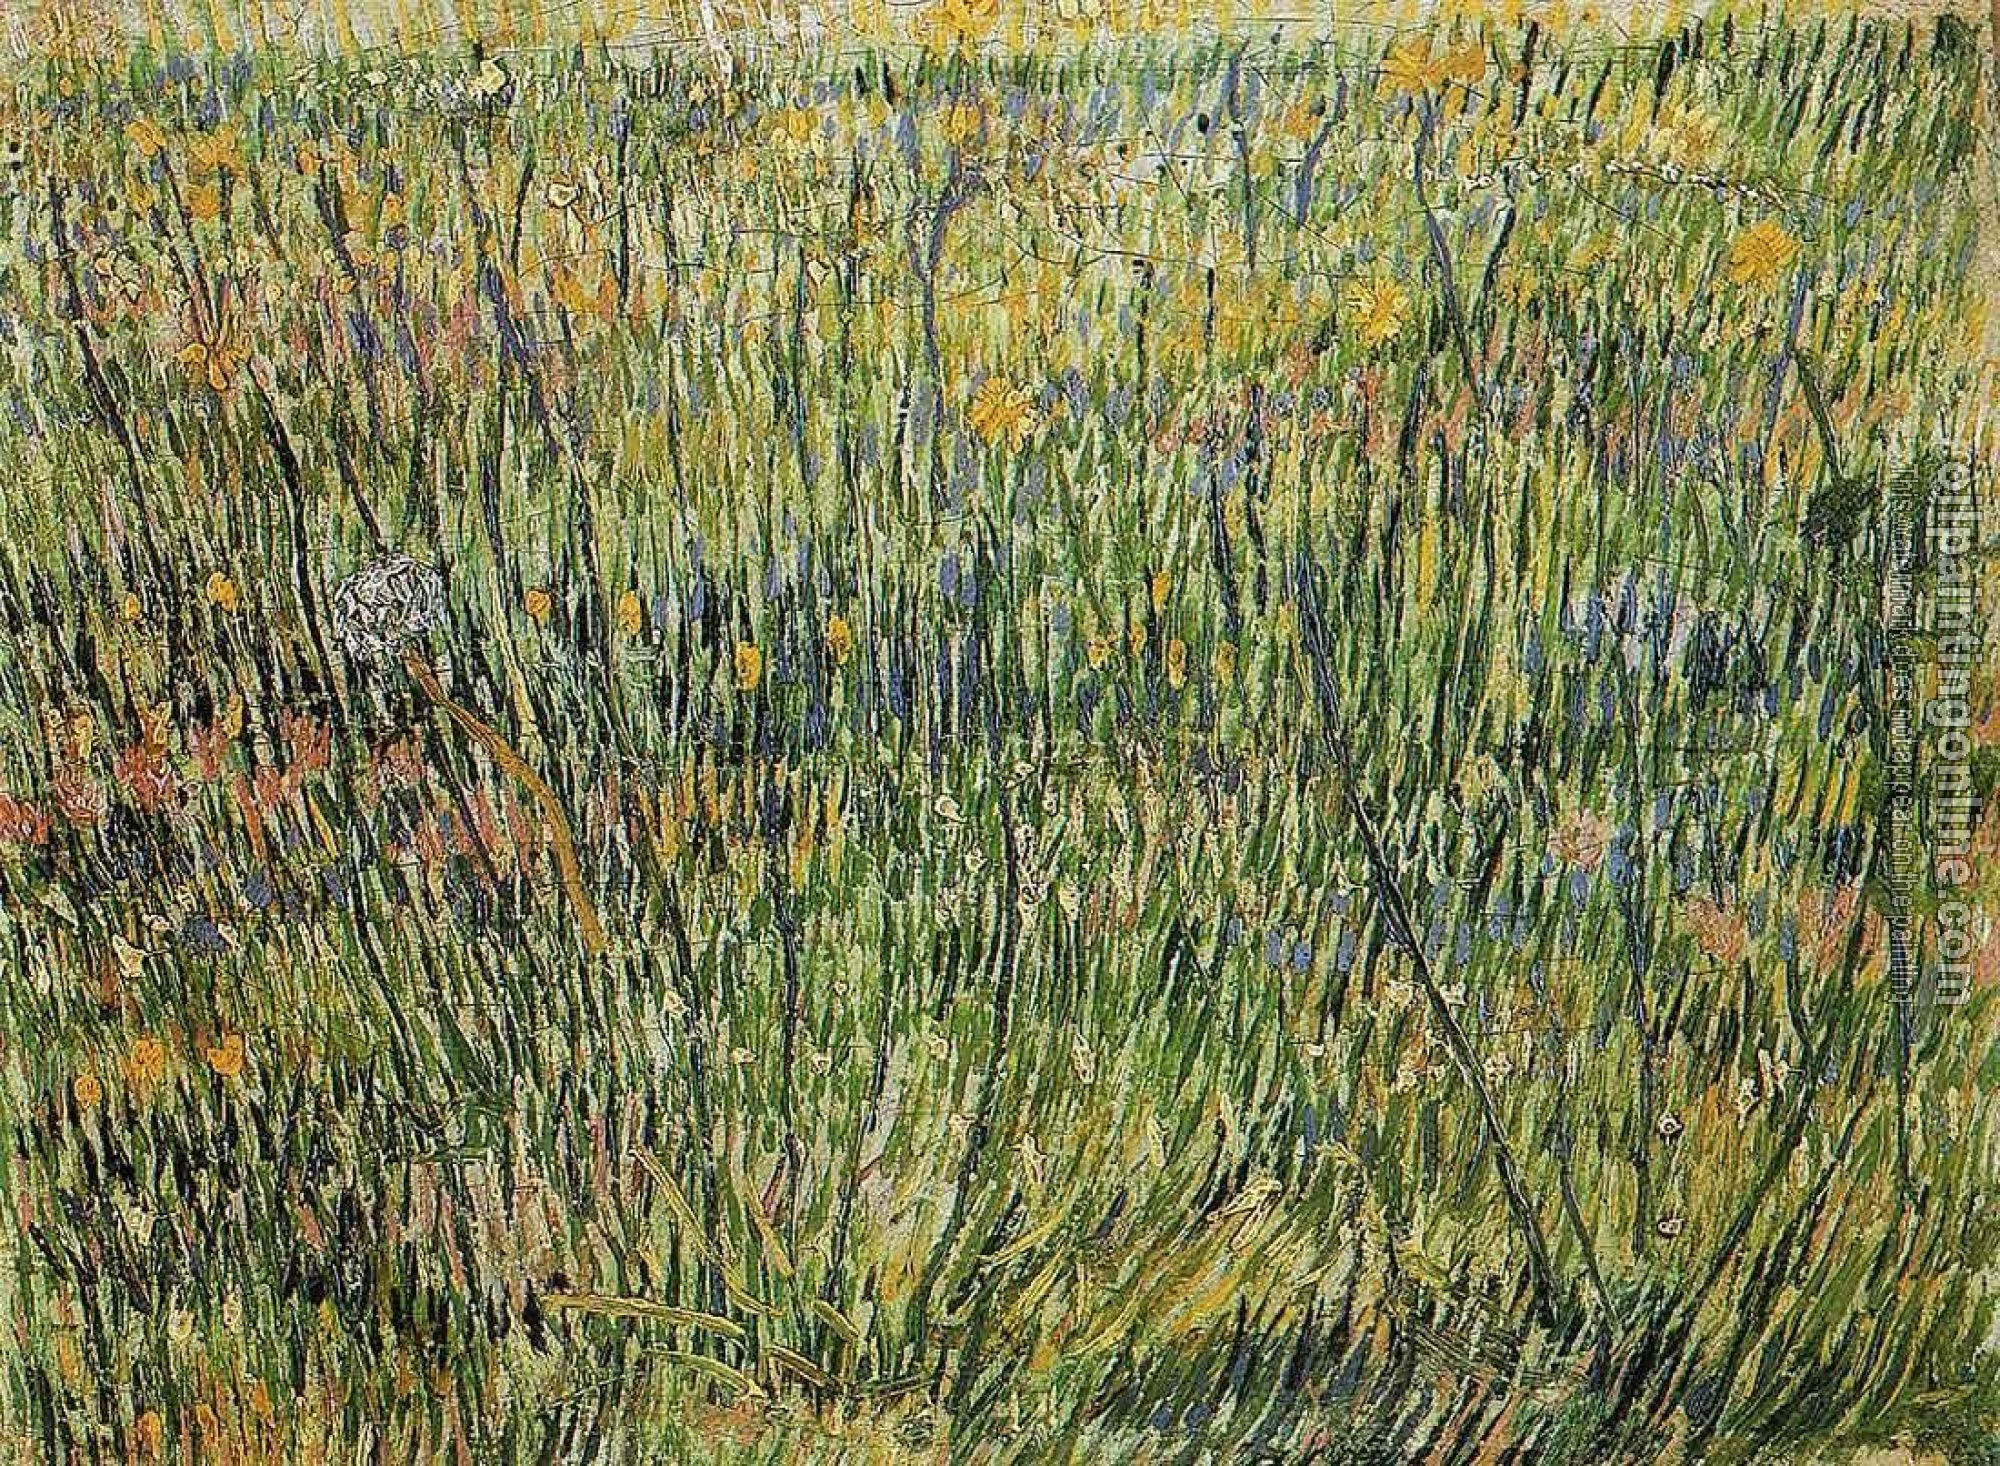 Gogh, Vincent van - Pasture in Bloom